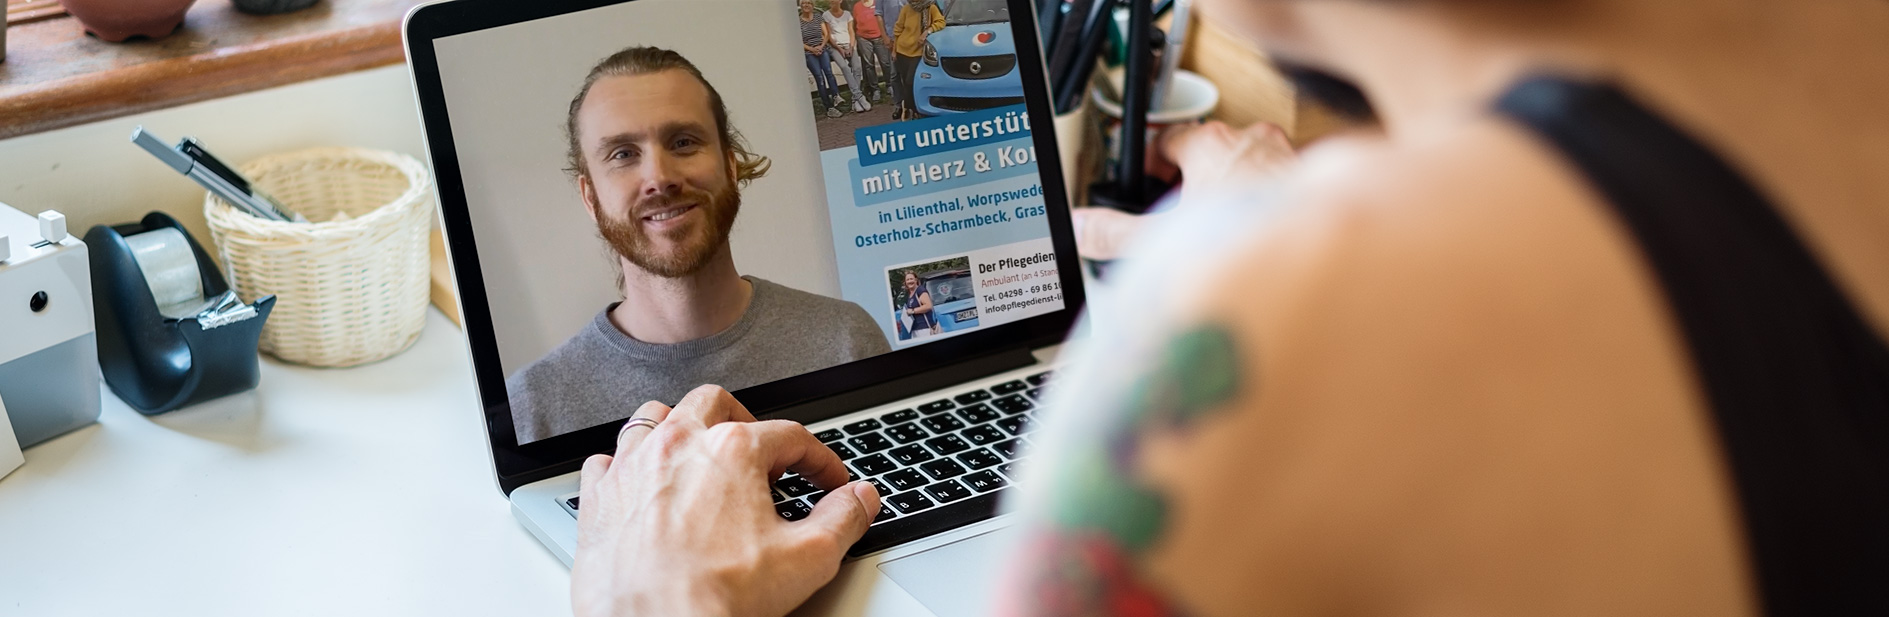 Eine Person von einem Laptop mit einer Online Veranstaltung von Sven Mensen